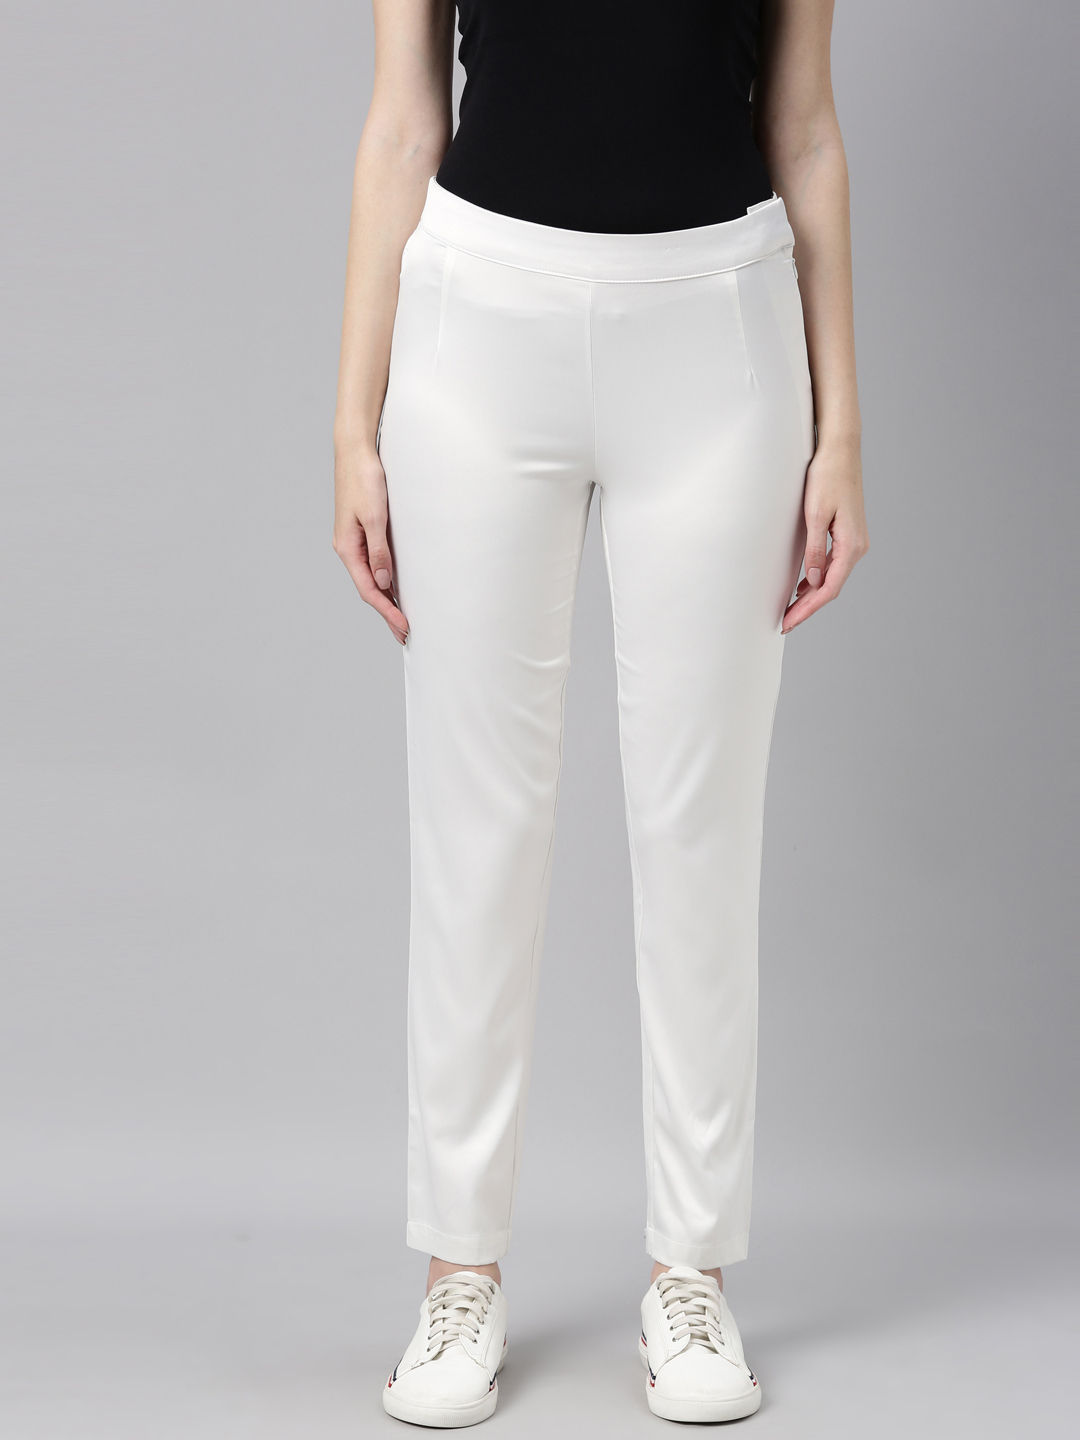 skytick Regular Fit Women White Trousers - Buy skytick Regular Fit Women  White Trousers Online at Best Prices in India | Flipkart.com